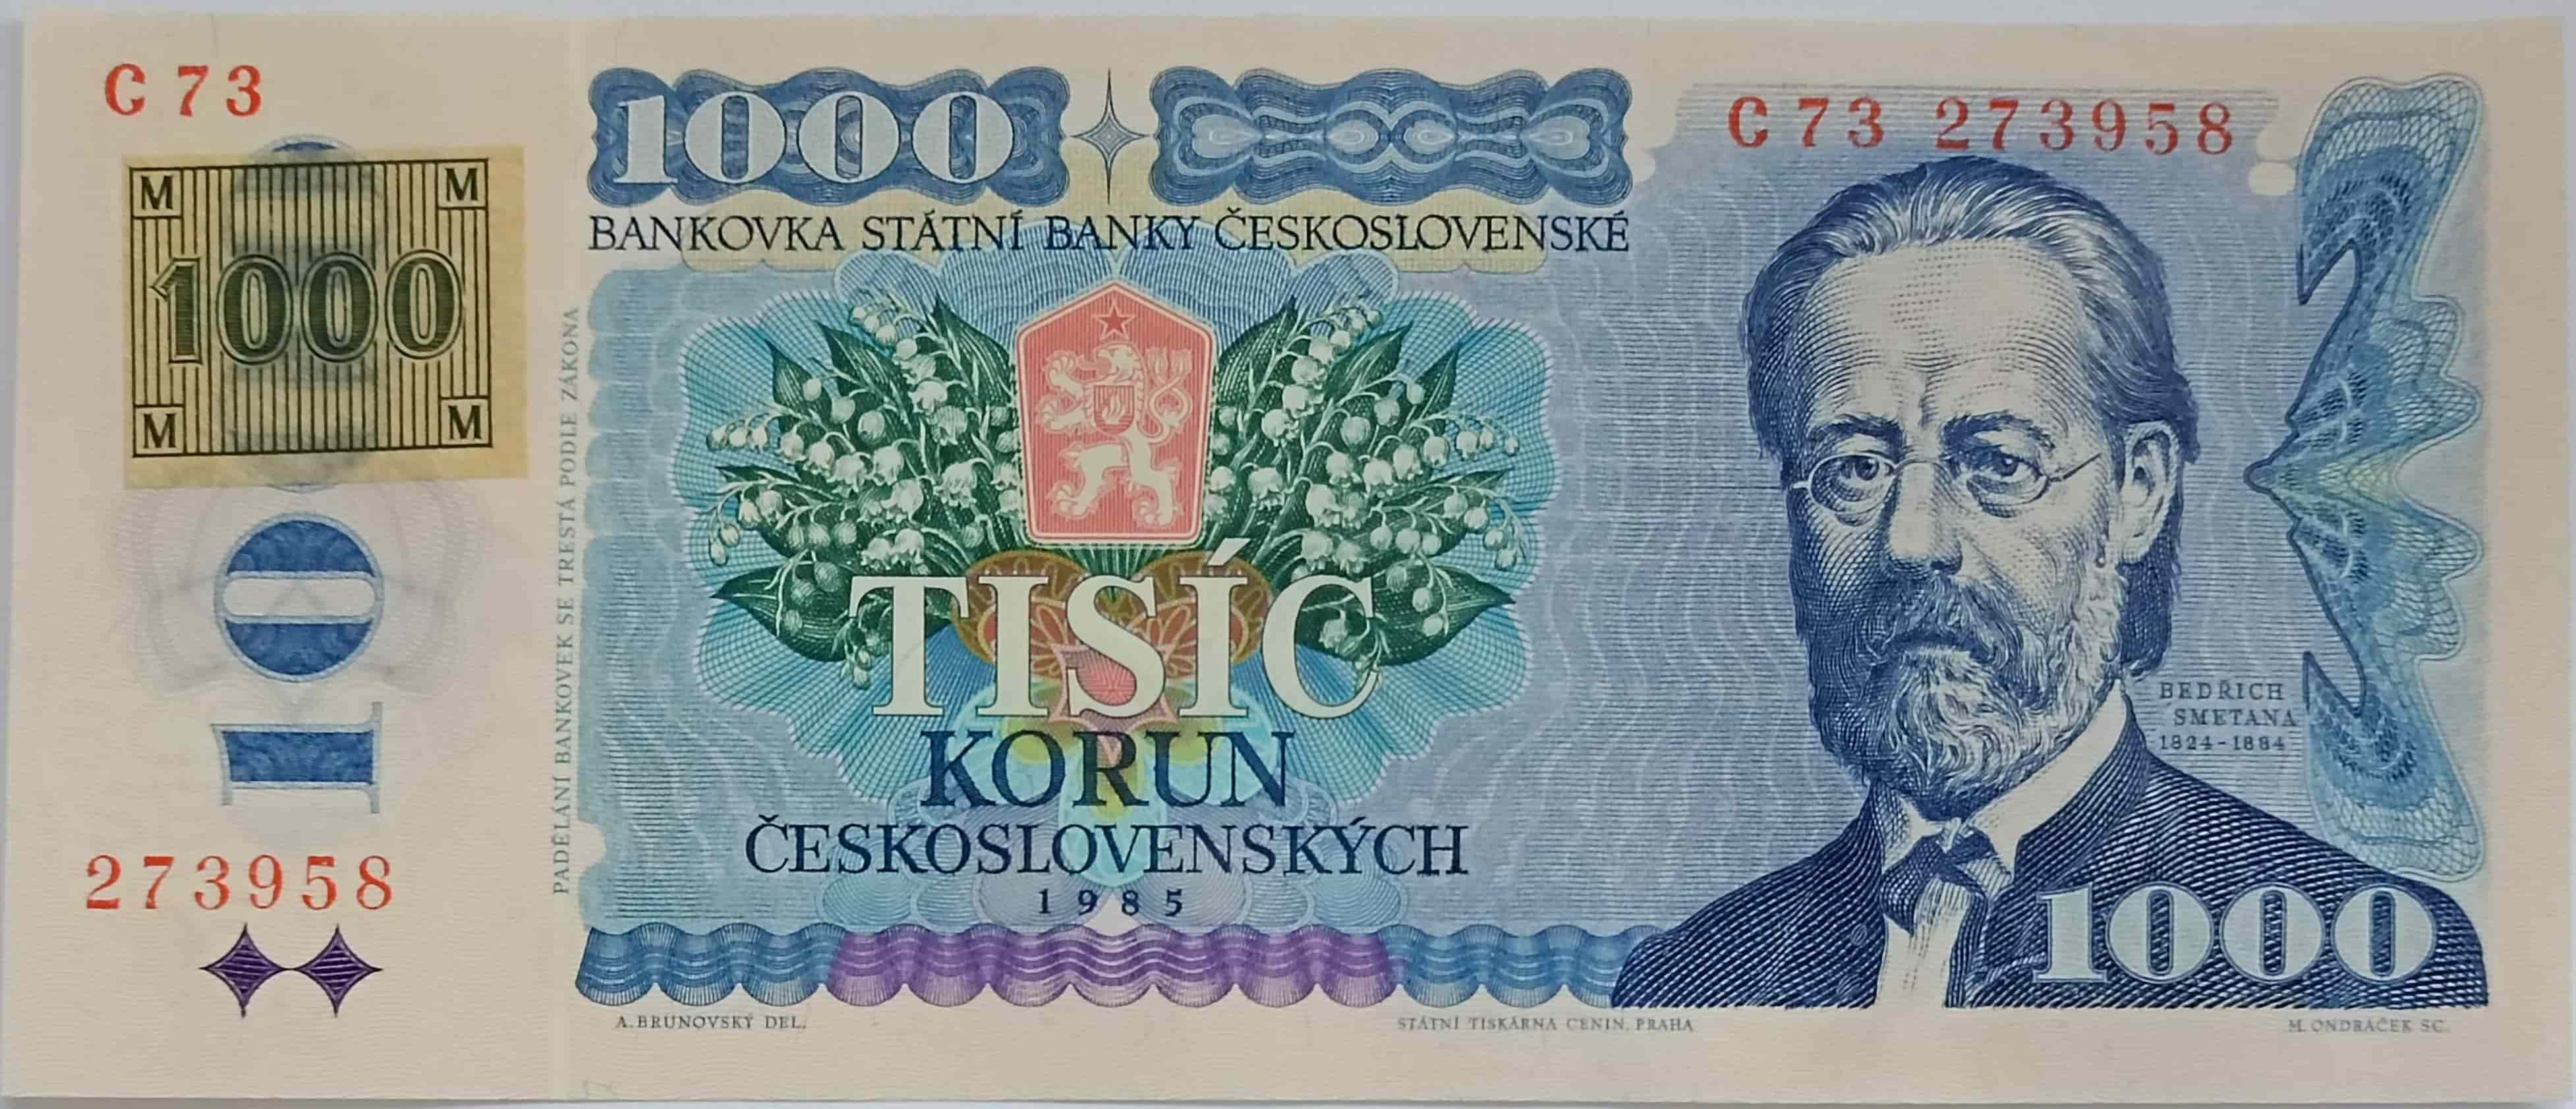 1000 Kčs 1985 C73 ČR kolok lepený